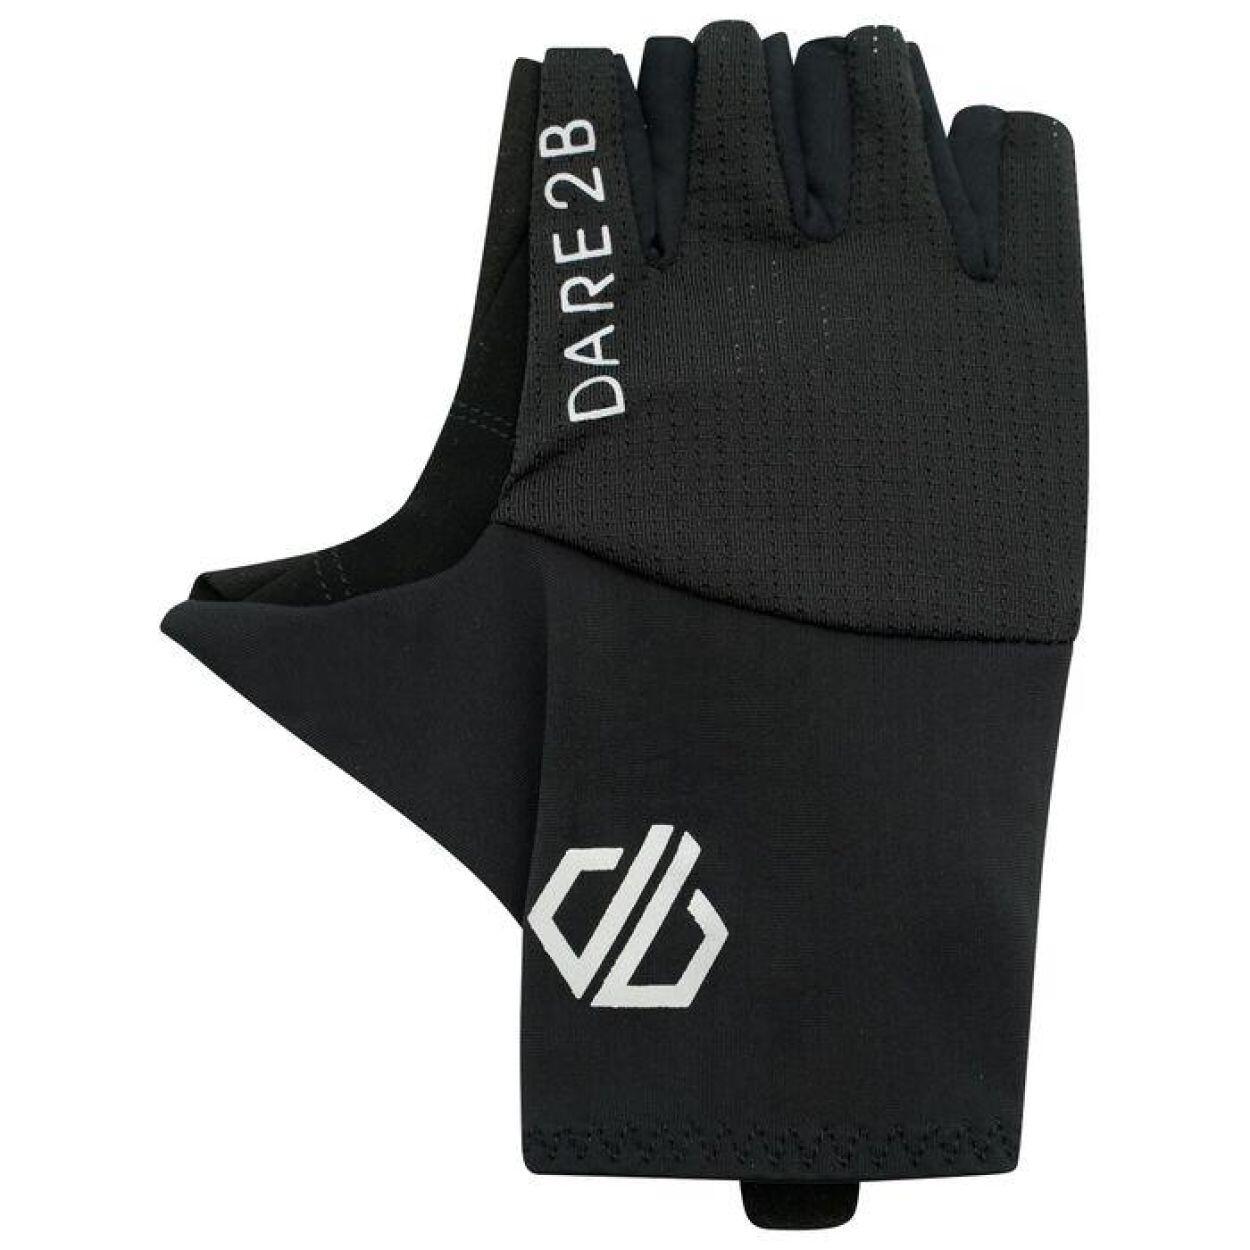 Dare 2b - Men's Forcible II Fingerless Gloves 3/4